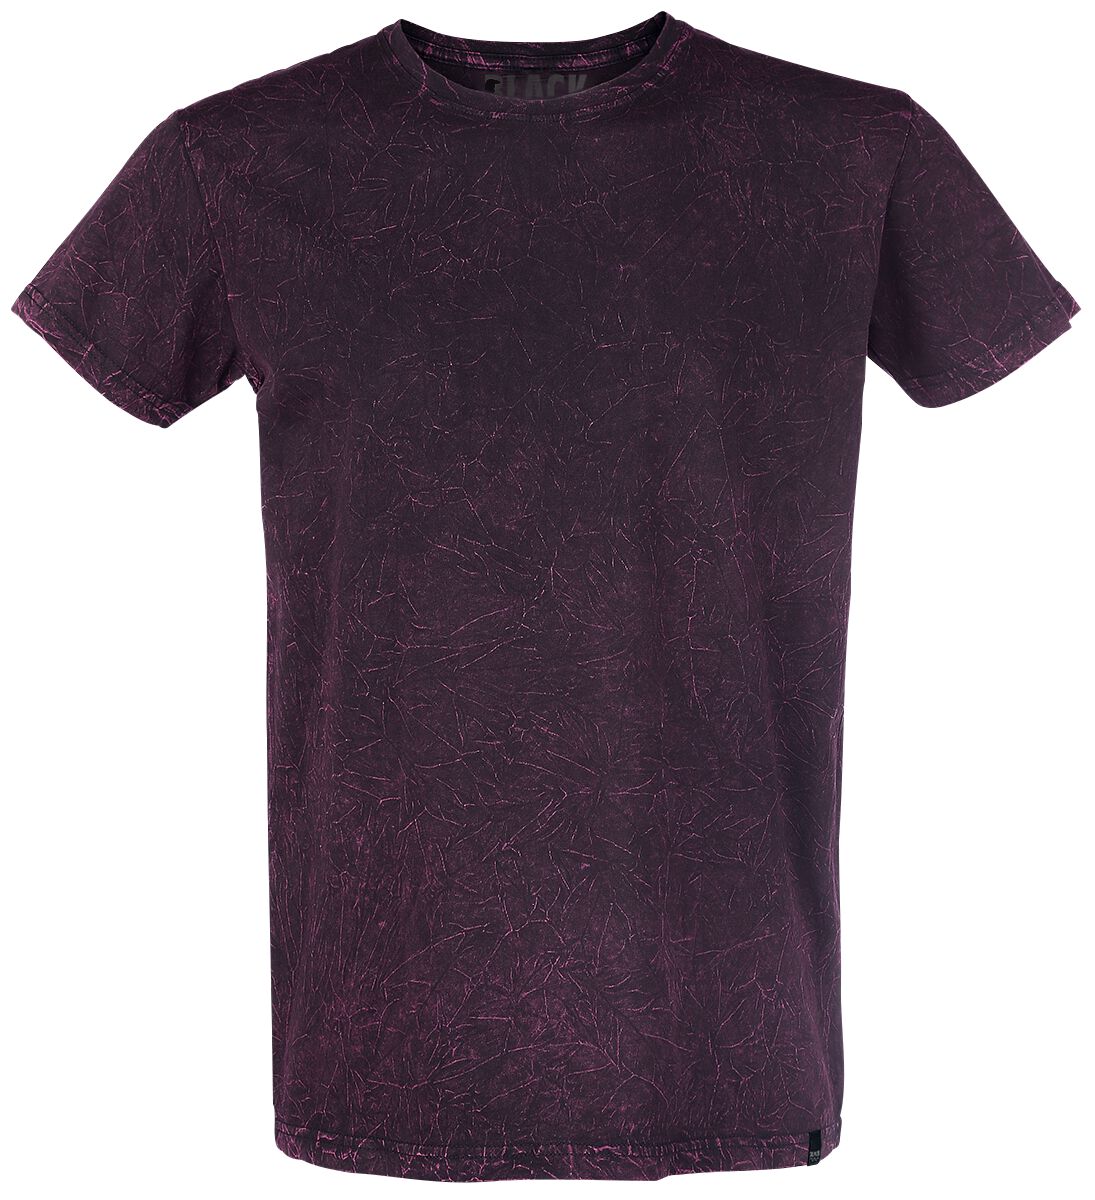 Black Premium by EMP T-Shirt - Rebel Soul - S bis 5XL - für Männer - Größe S - dunkelrot